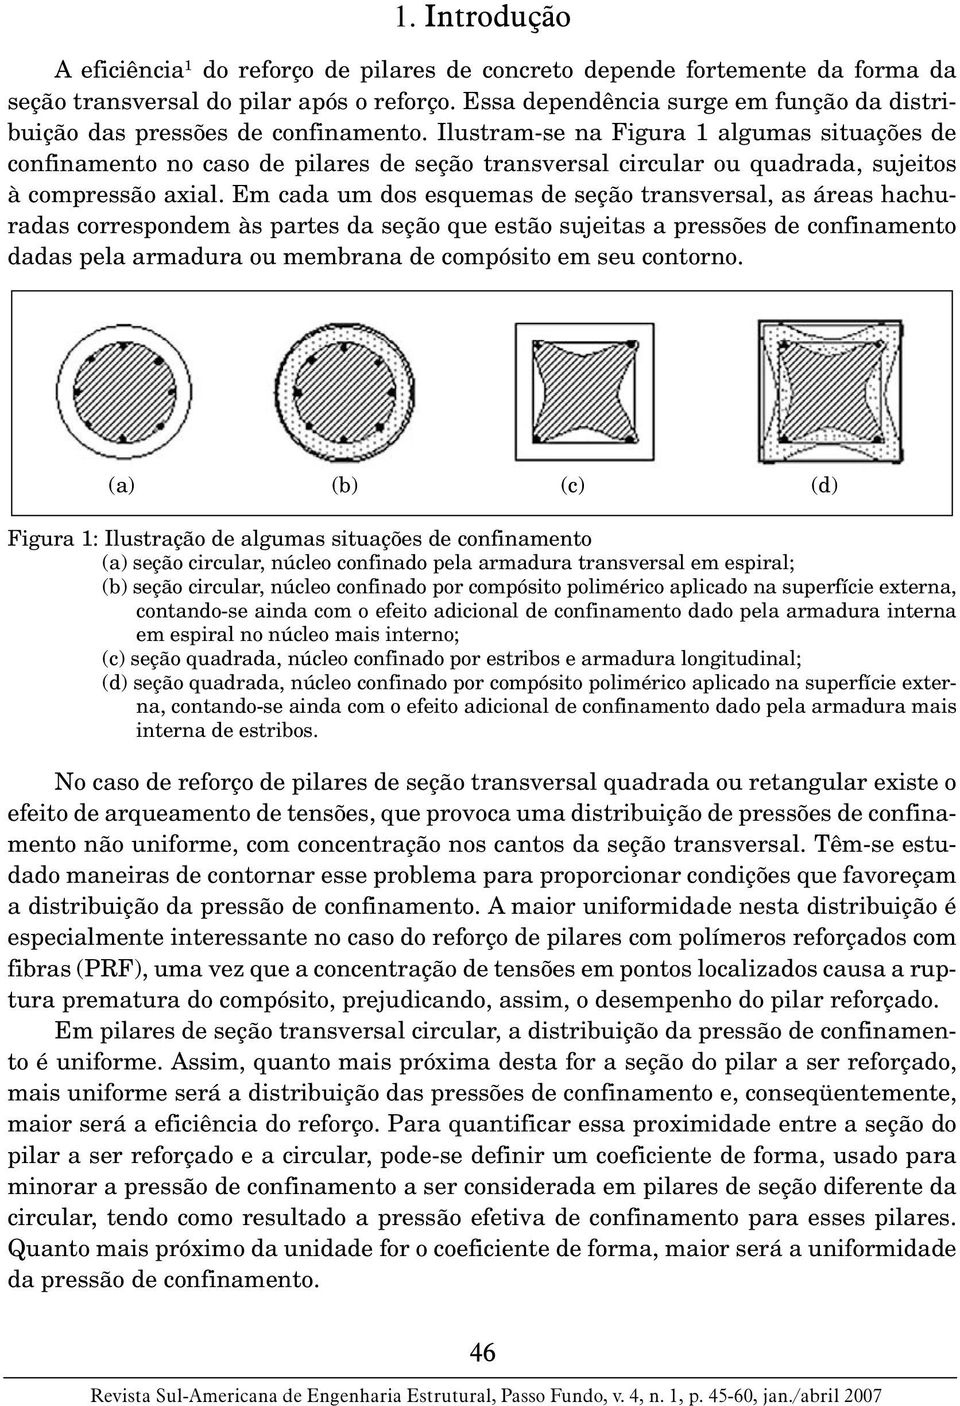 Ilustram-se na Figura 1 algumas situações de confinamento no caso de pilares de seção transversal circular ou quadrada, sujeitos à compressão axial.